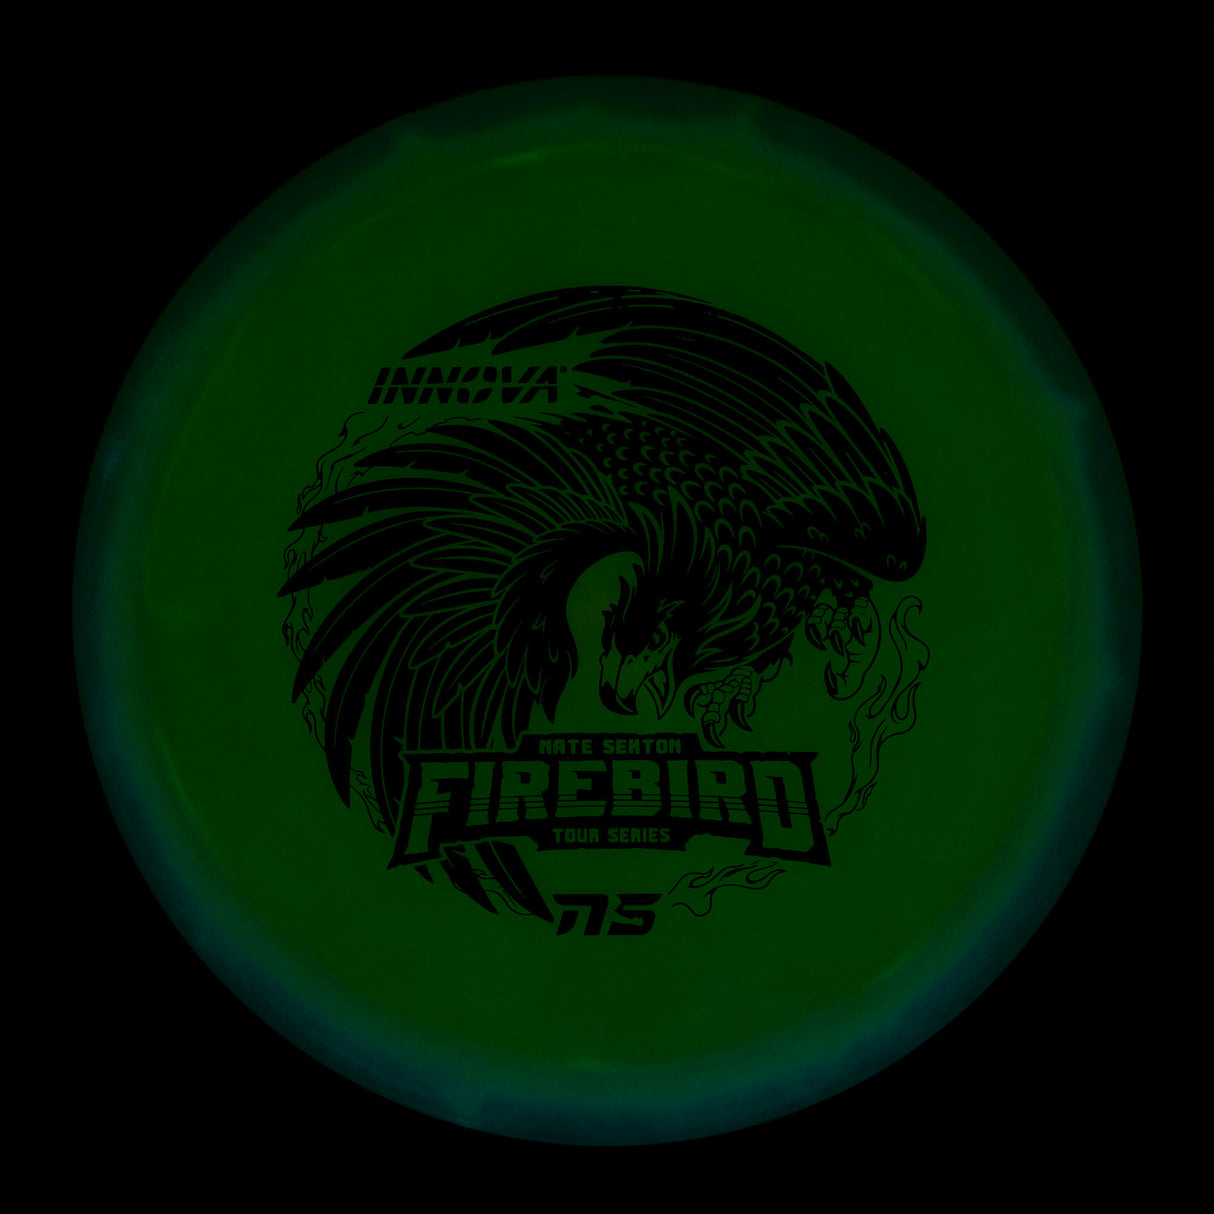 Innova Firebird - Nate Sexton Tour Series Champion Glow 169g | Style 0006